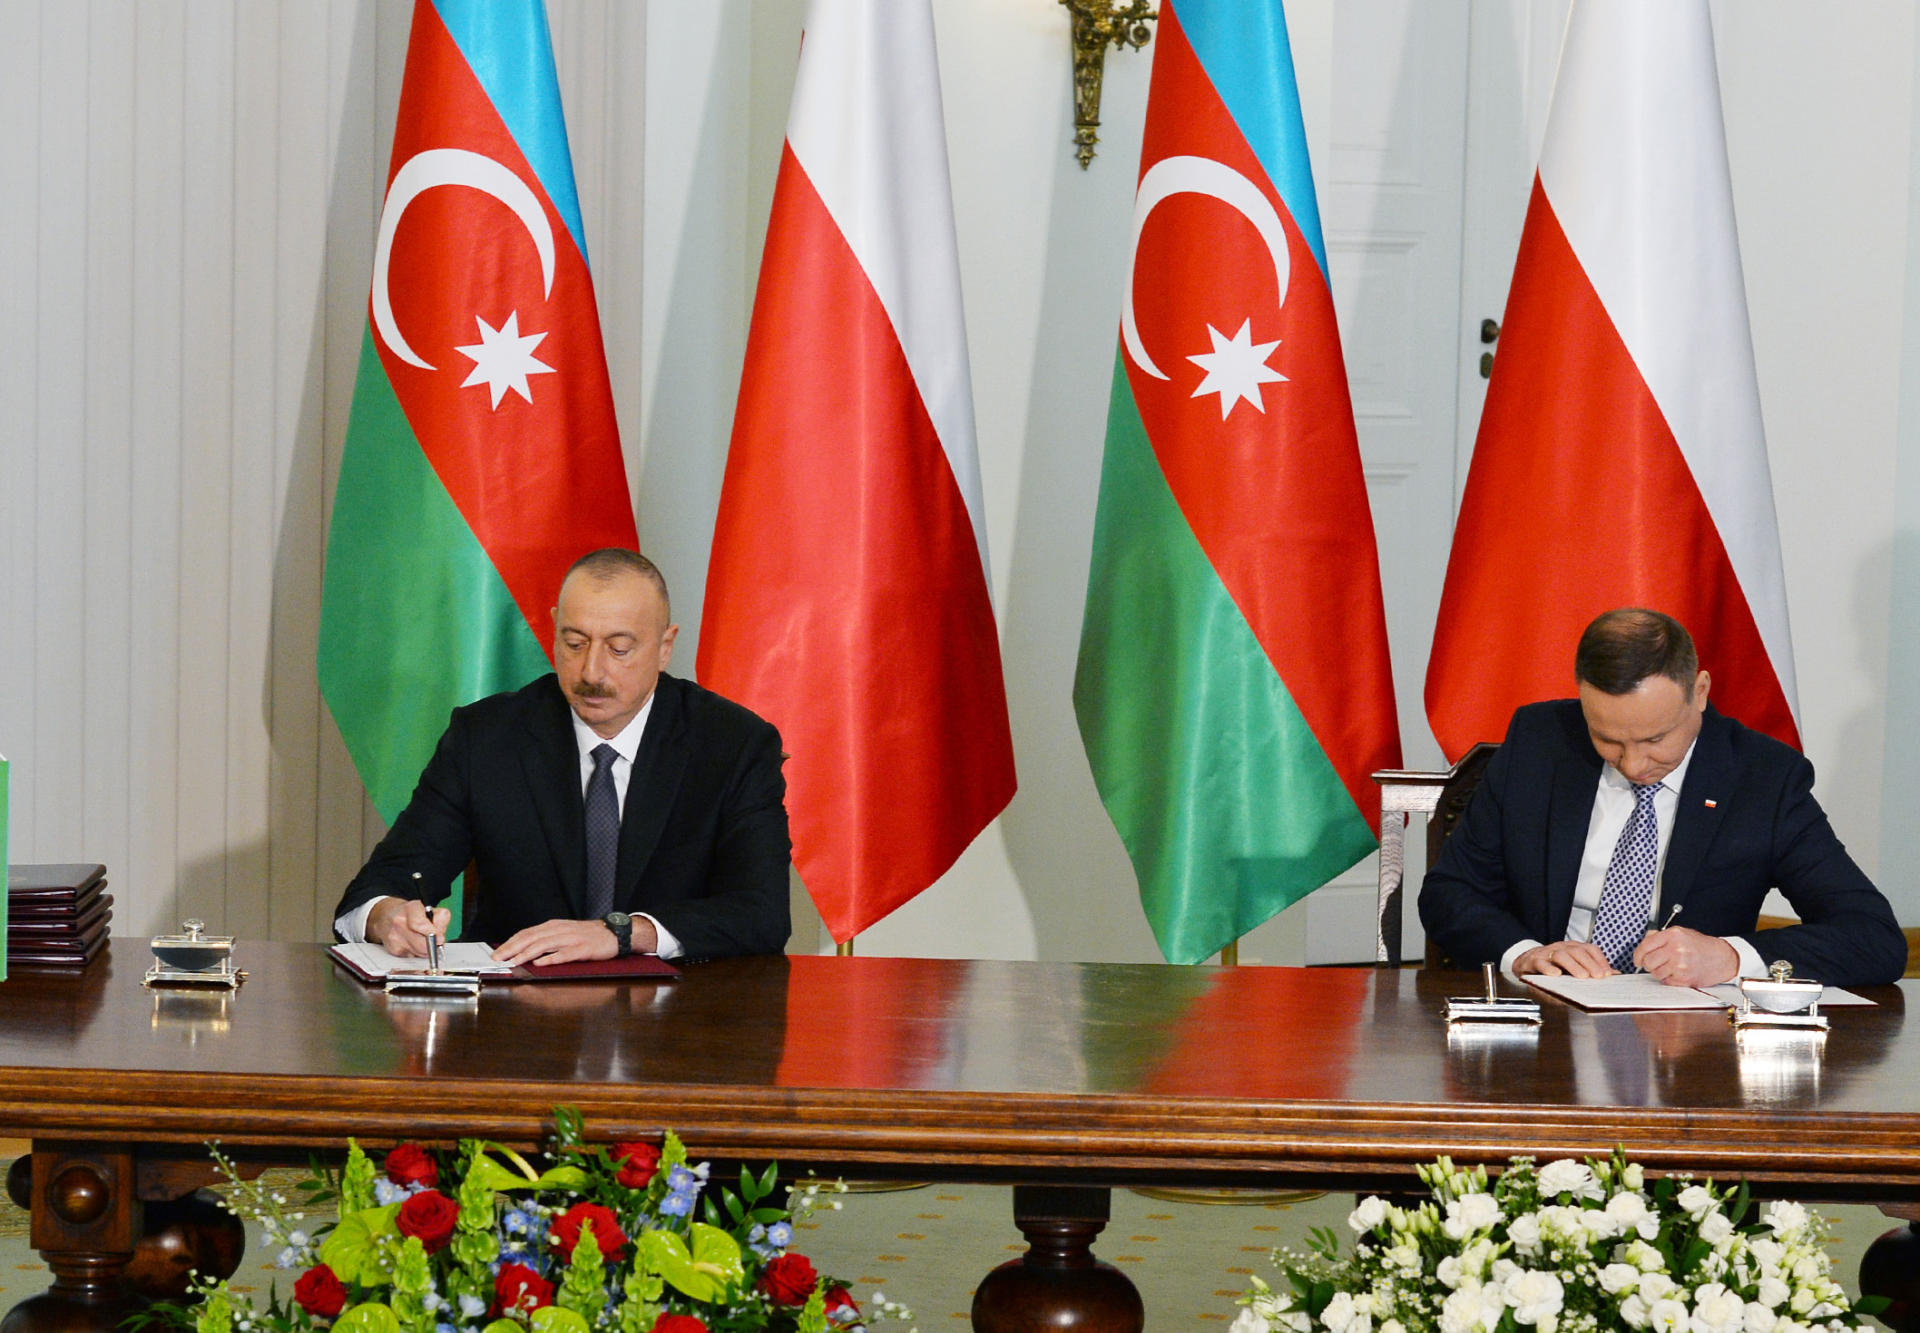 Азербайджан и Польша подписали ряд документов (ФОТО) (версия 2)